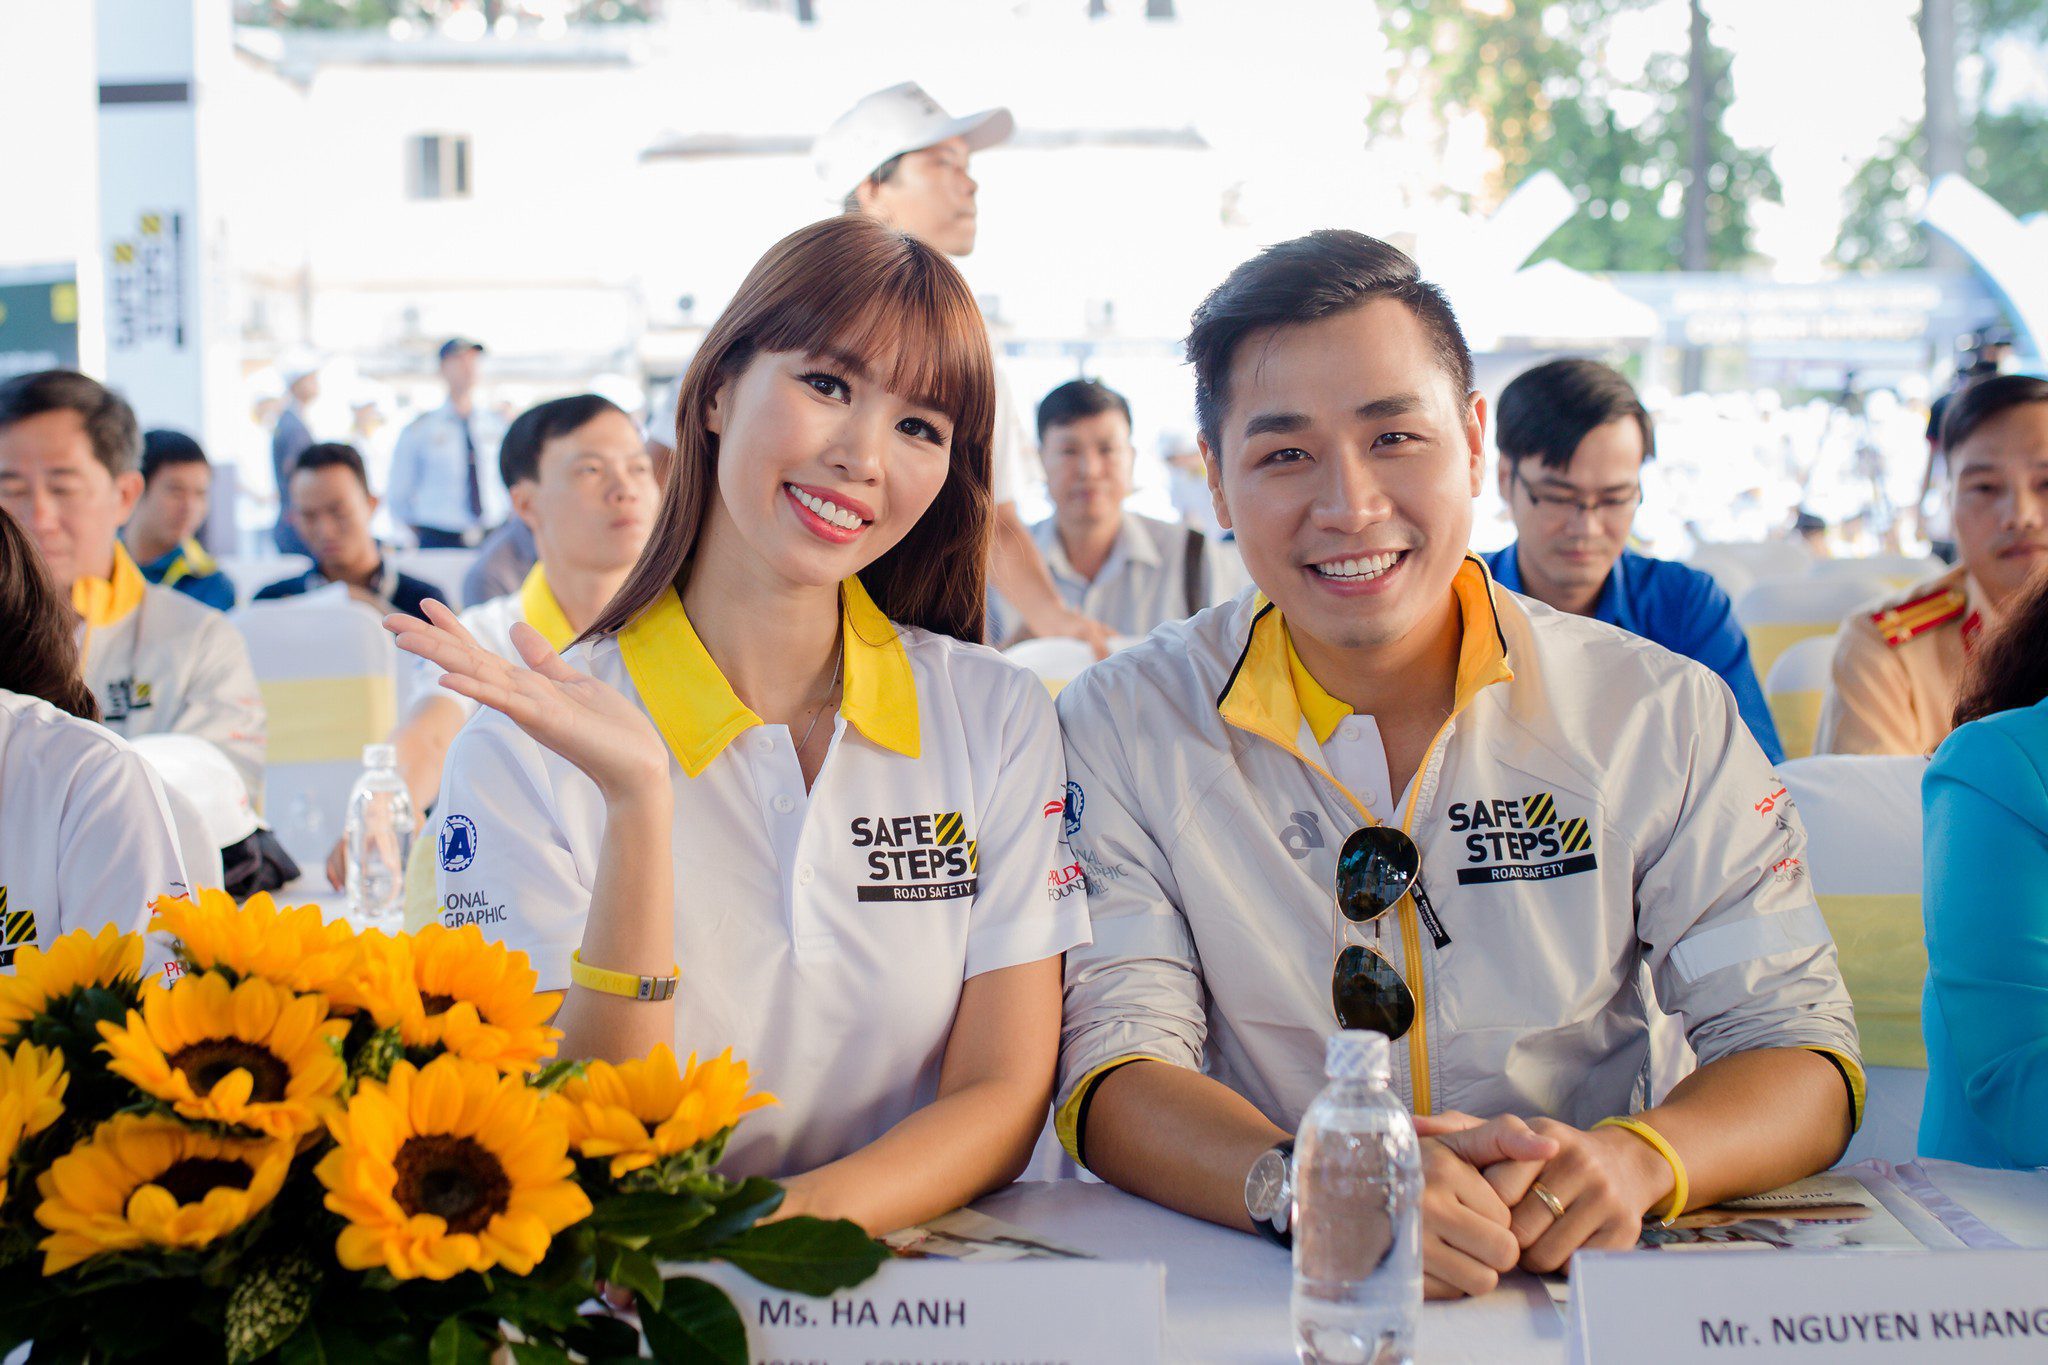 Bừng sáng sự kiện Safe Steps của Liên Hợp Quốc tại Việt Nam với áo thun sự kiện - Ao thun Safe steps Road Safety 13